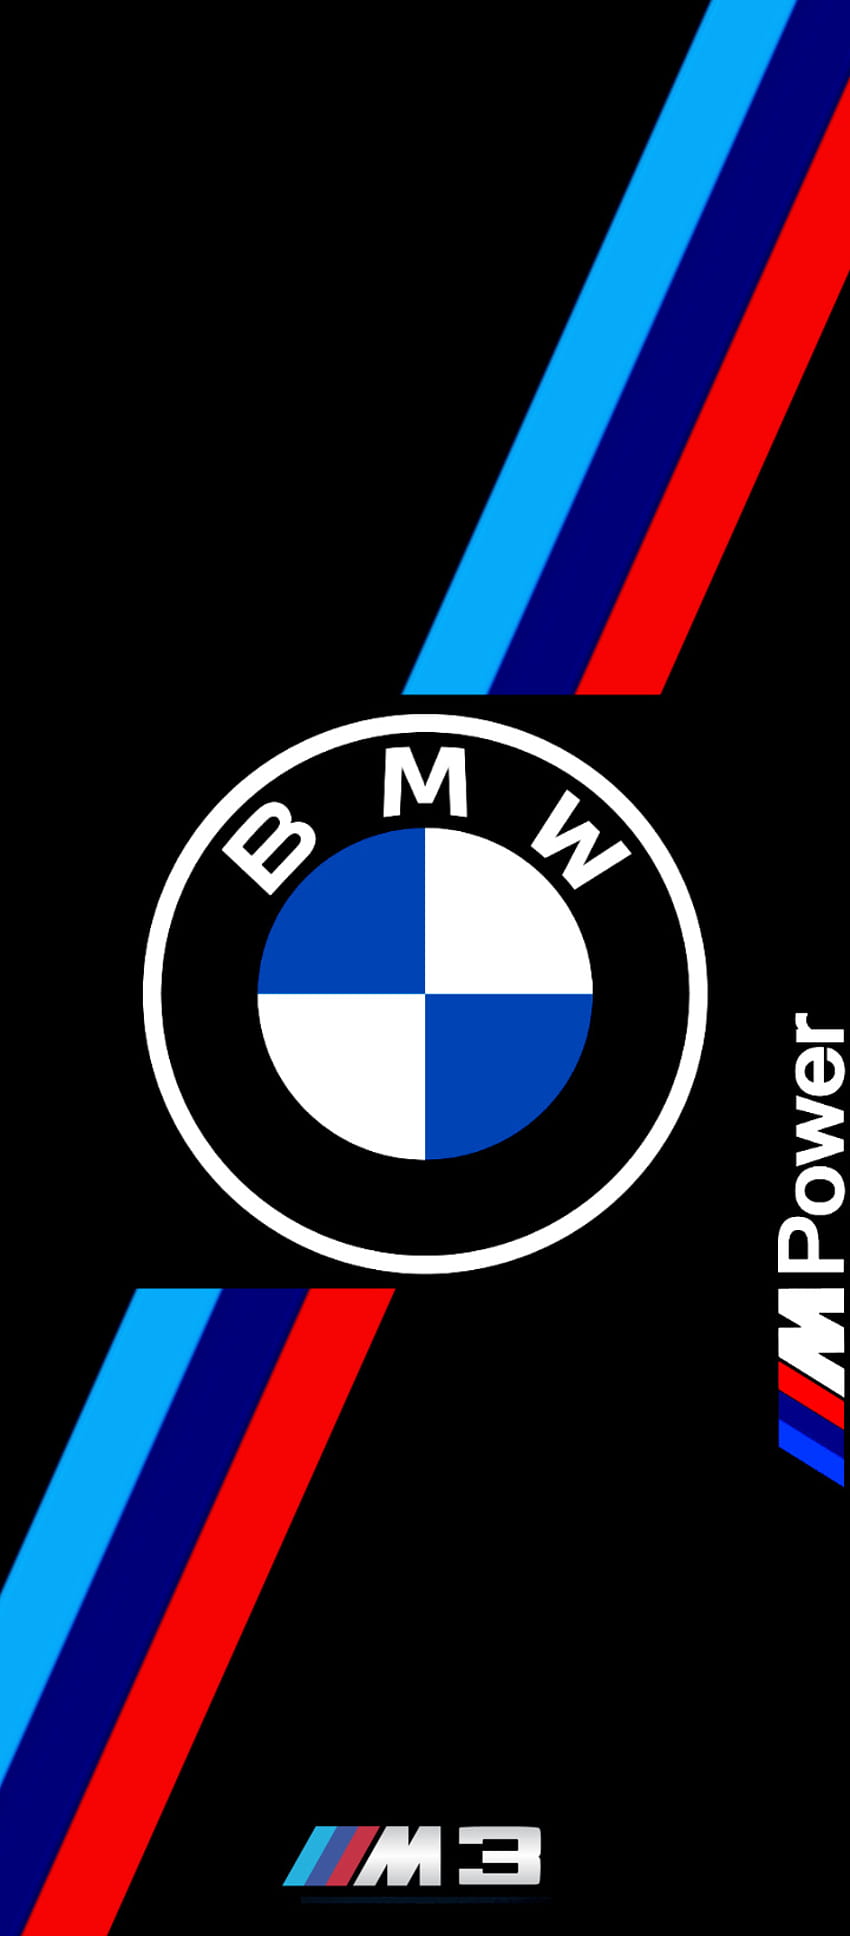 BMW 로고, 심볼, 자동차 HD 전화 배경 화면